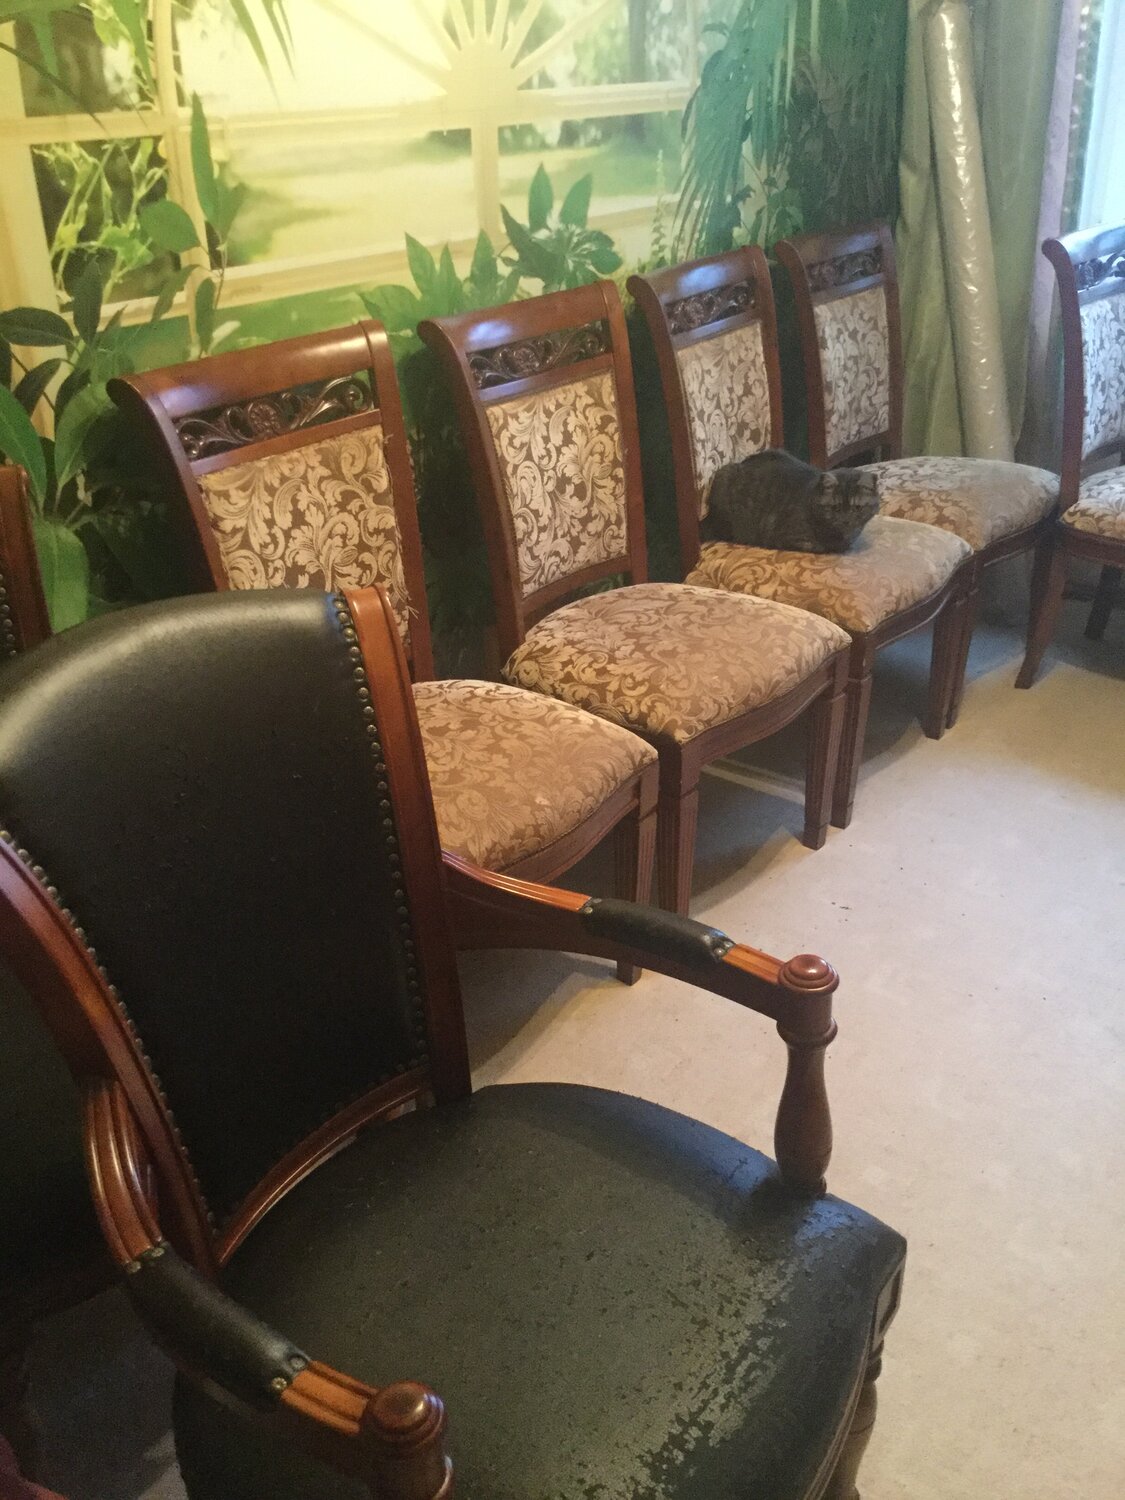 Перетяжка старого кресла с деревянными подлокотниками советского образца